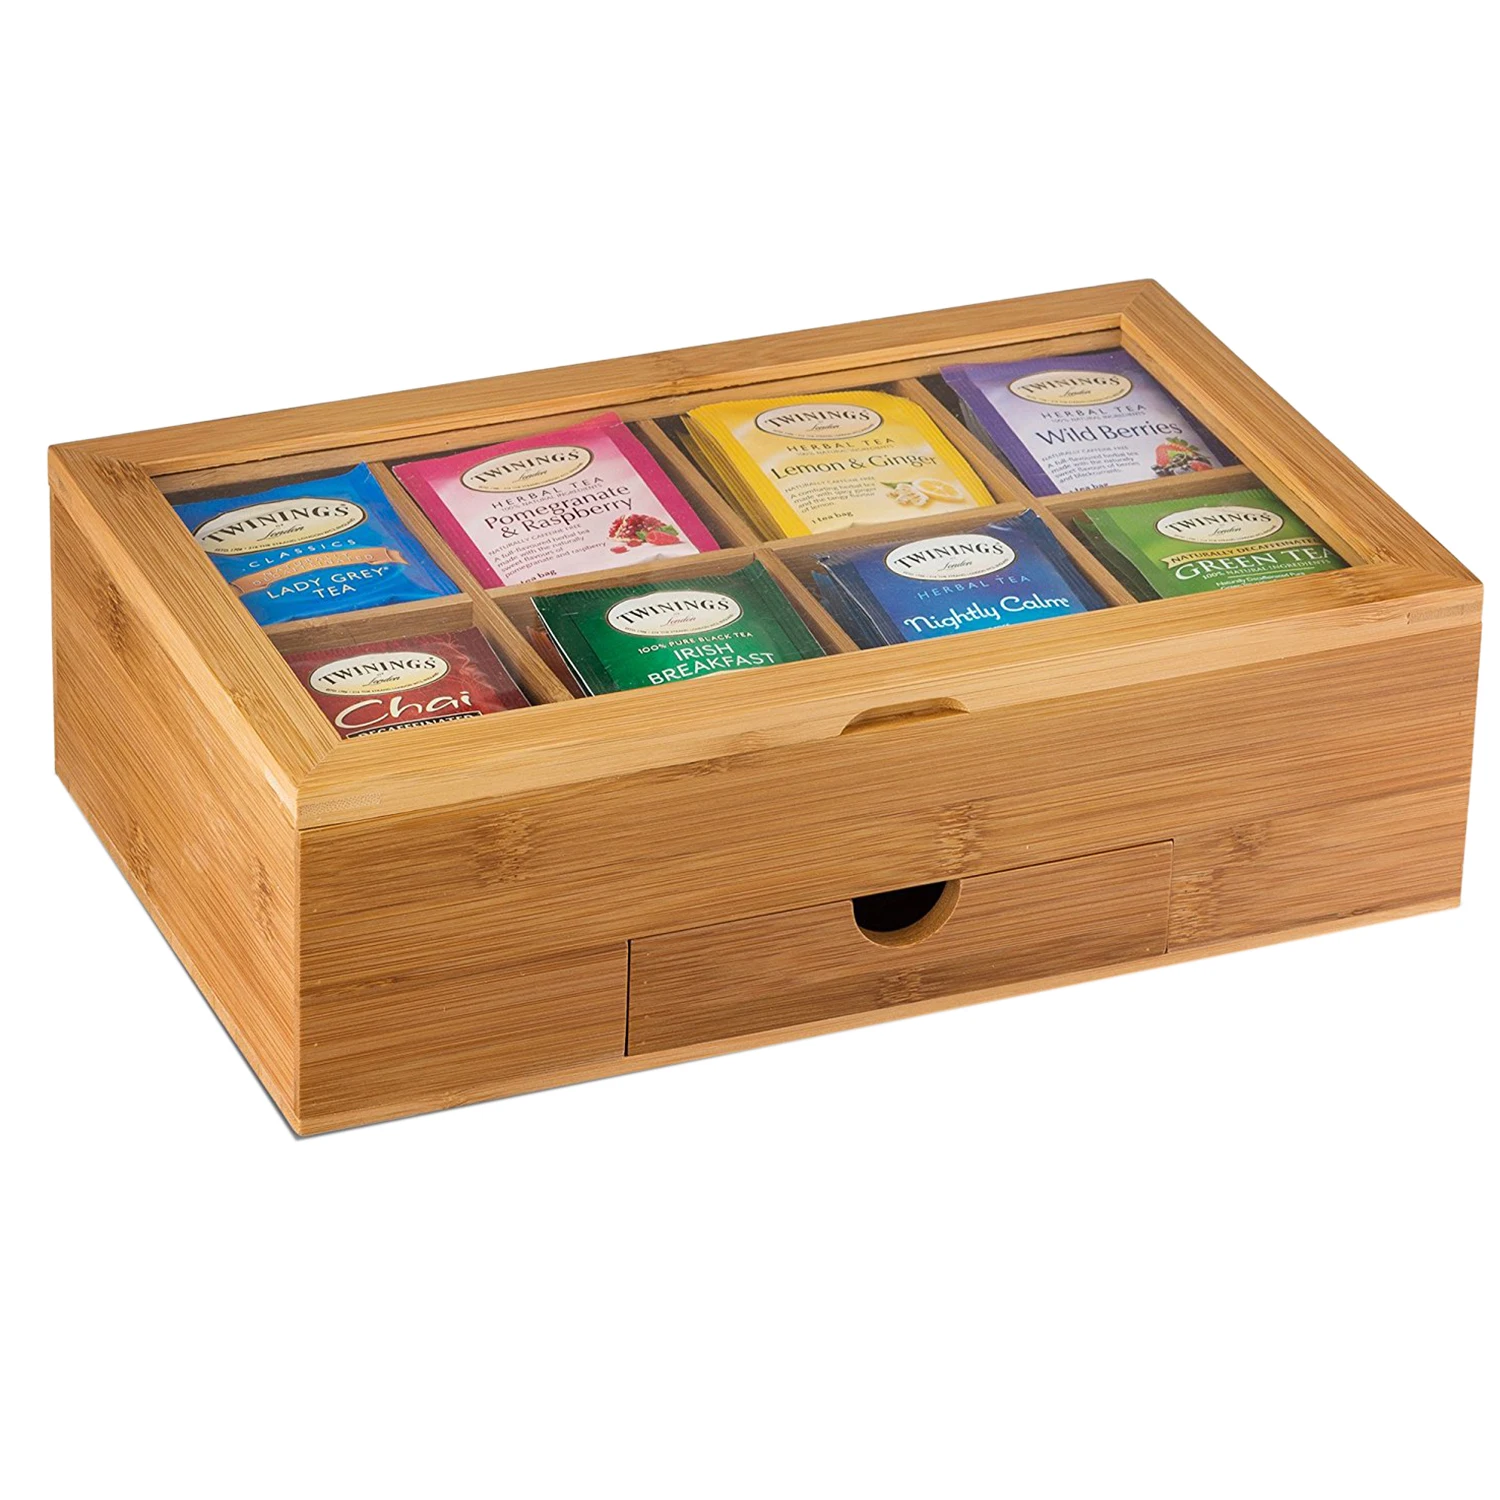 Горячая, органайзер для чая, Бамбуковая коробка для чая с маленьким ящиком, Натуральный Бамбуковый чайный сундук-отличная идея подарка